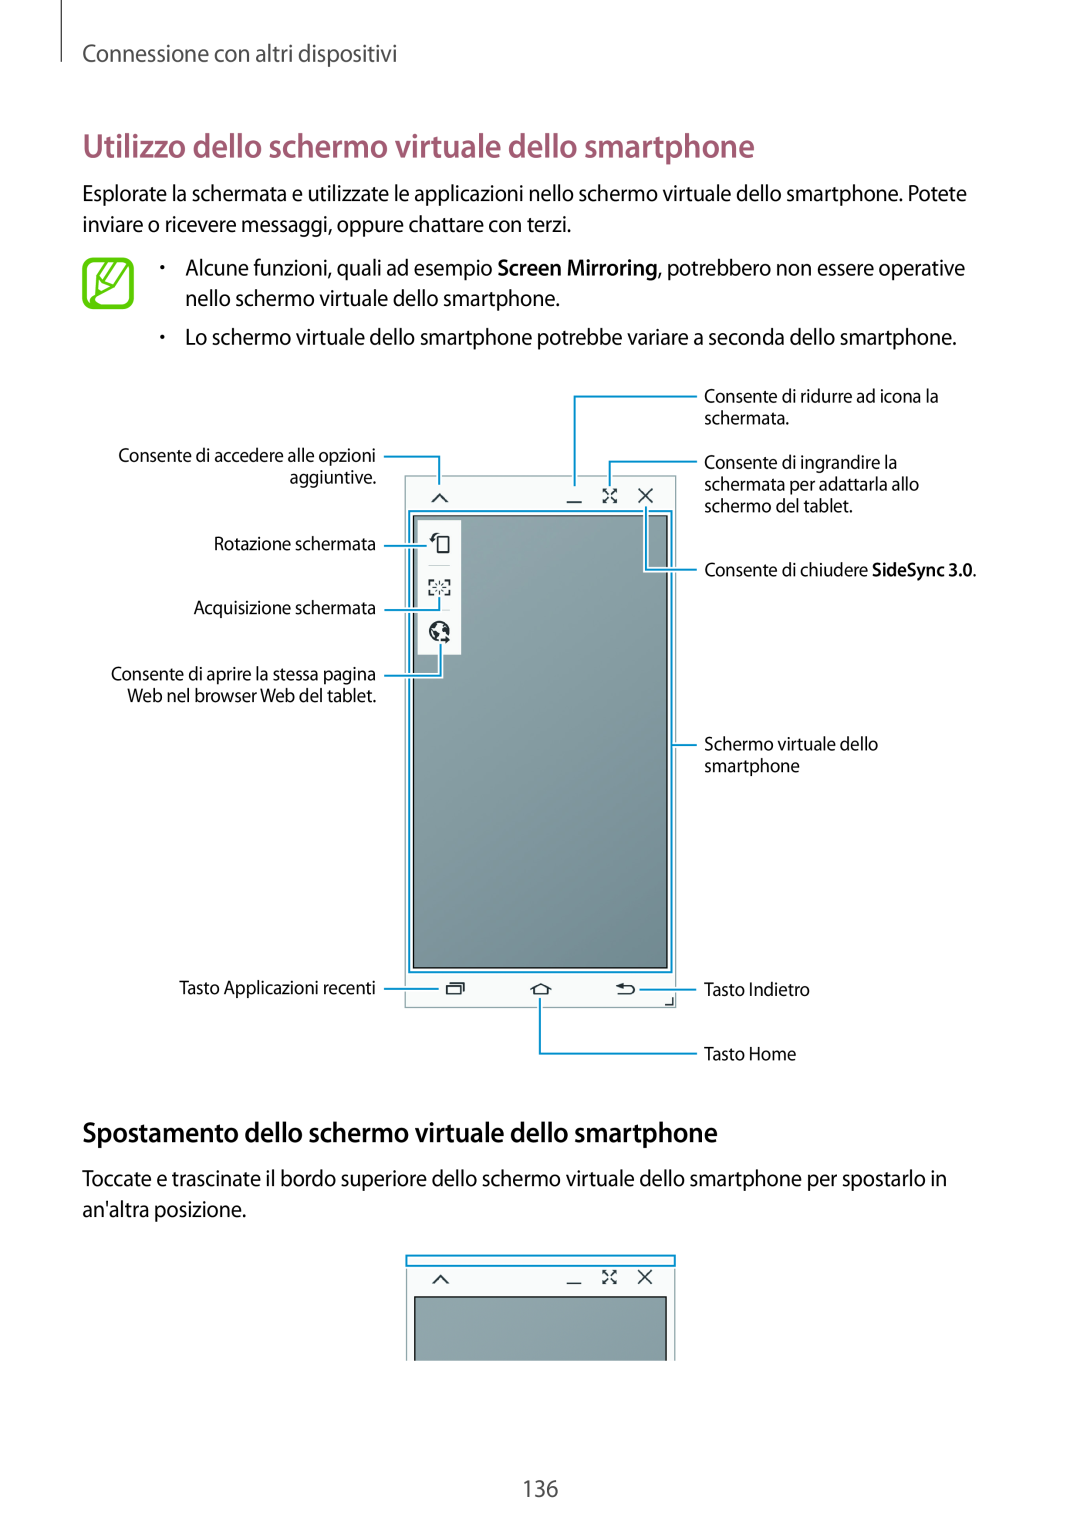 Samsung SM-T700NTSATUR, SM-T700NZWATUR Utilizzo dello schermo virtuale dello smartphone, Connessione con altri dispositivi 